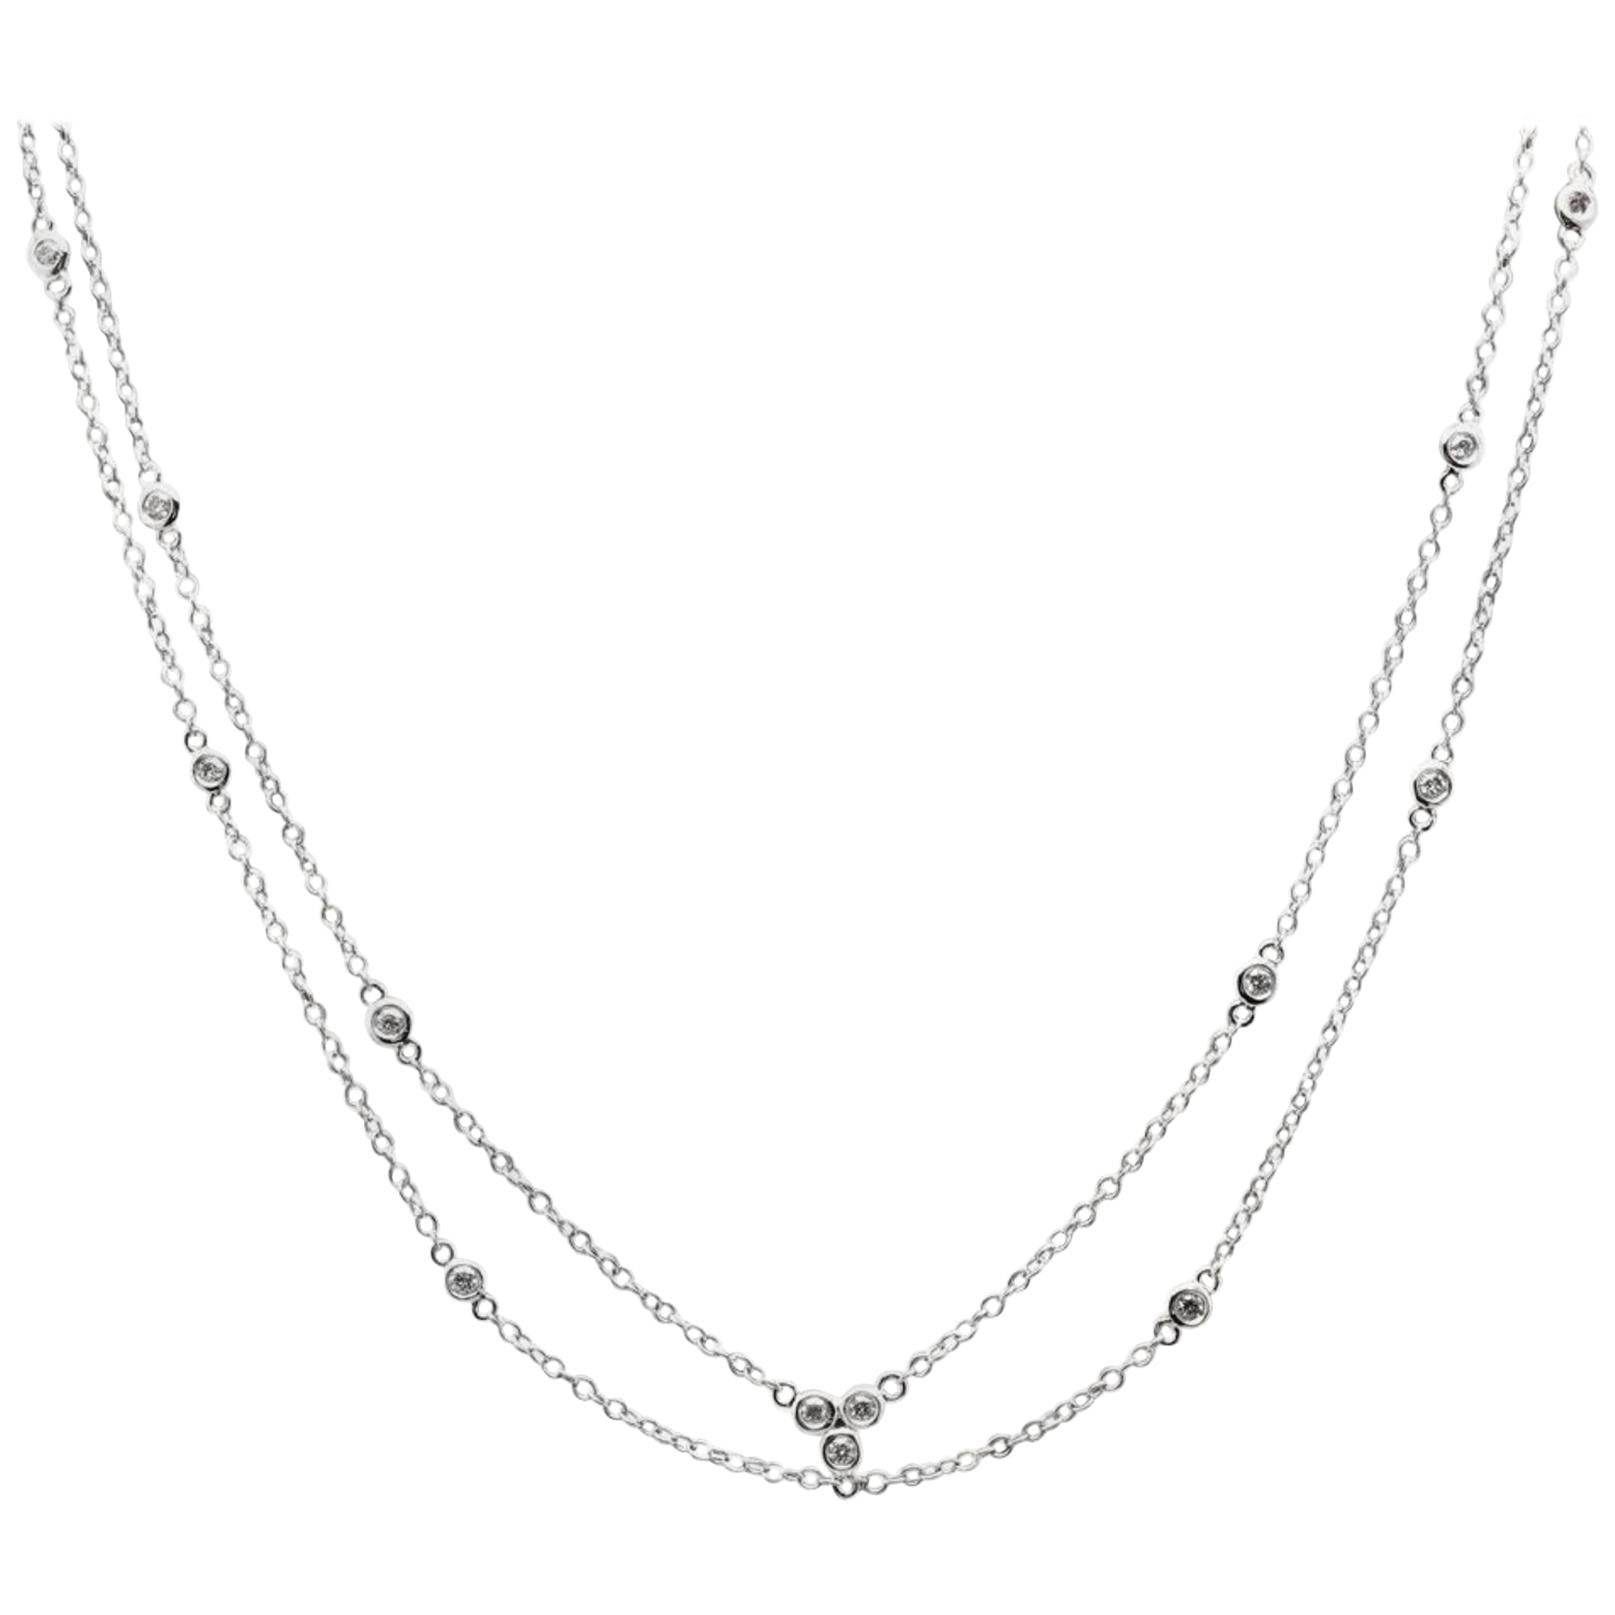 Splendid 14 Karat Solid White Gold Chain Necklace